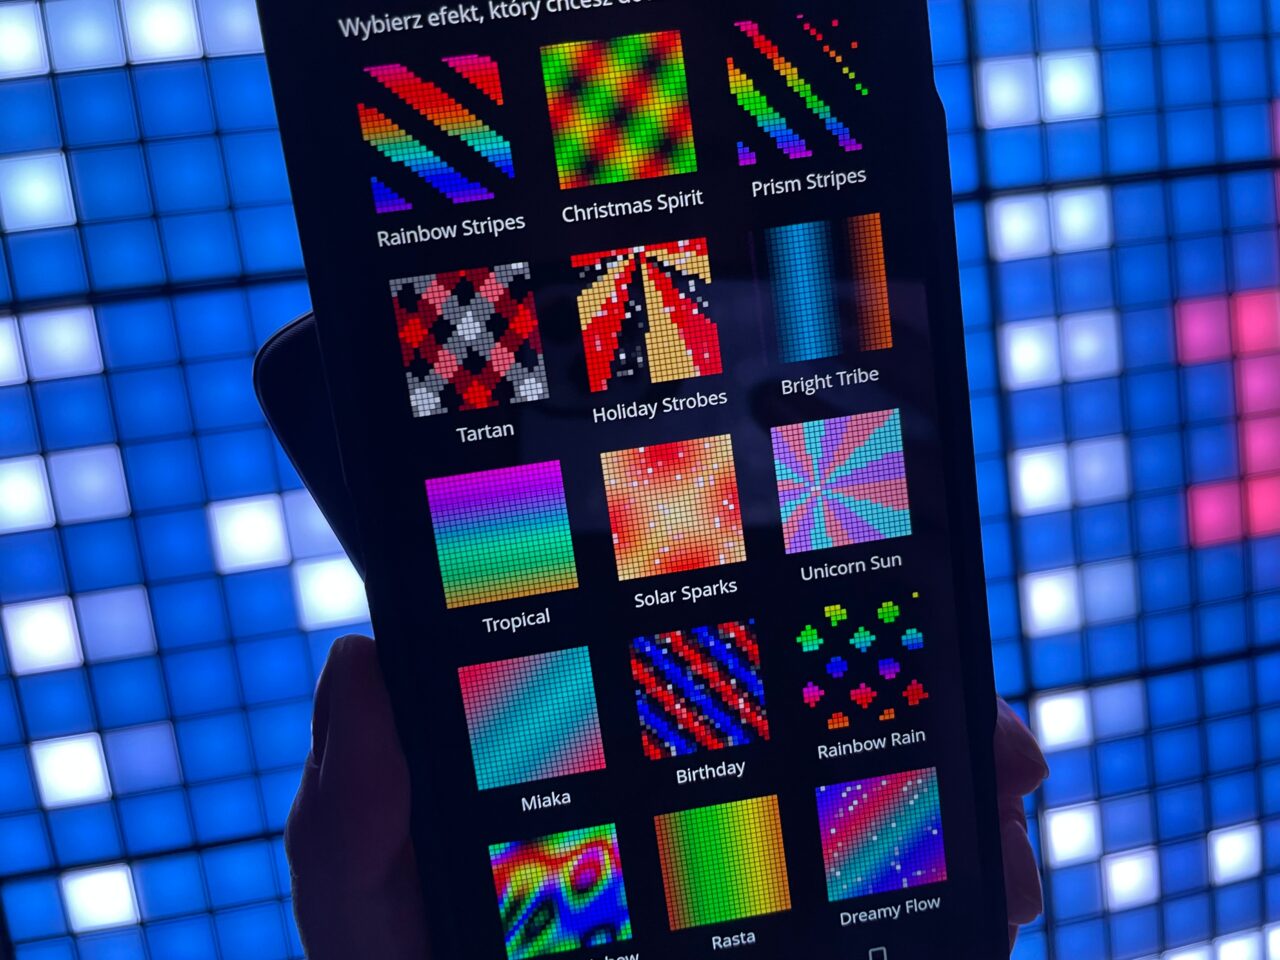 Ekran smartfona wyświetlający różne wzory świetlne z opisami w aplikacji, trzymany na tle świecącej ściany z kwadratowymi panelami LED.